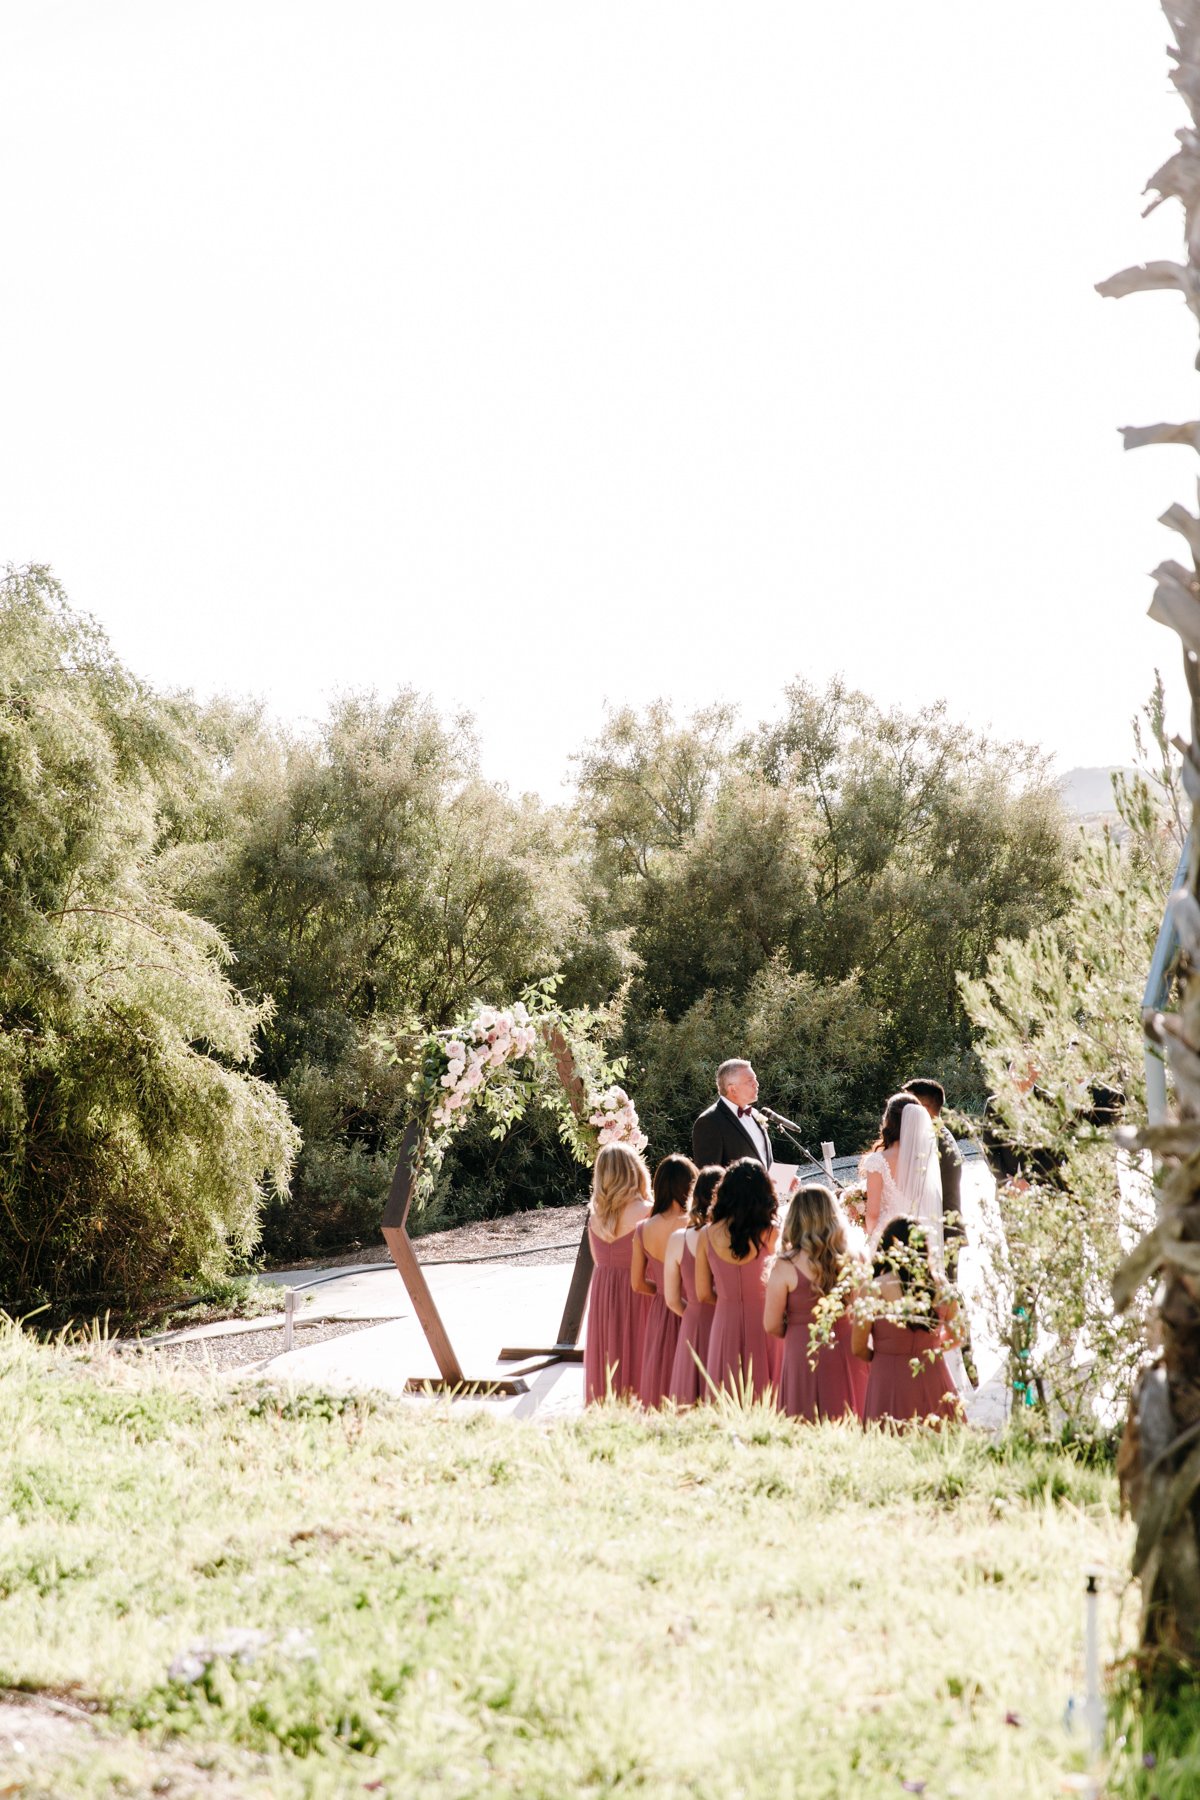 Ethereal Gardens Wedding Photographer, Escondido Wedding Photographer, San Diego Wedding Photographer, Ethereal Gardens Wedding, Escondido Wedding, SD Wedding Photographer, Southern California Wedding